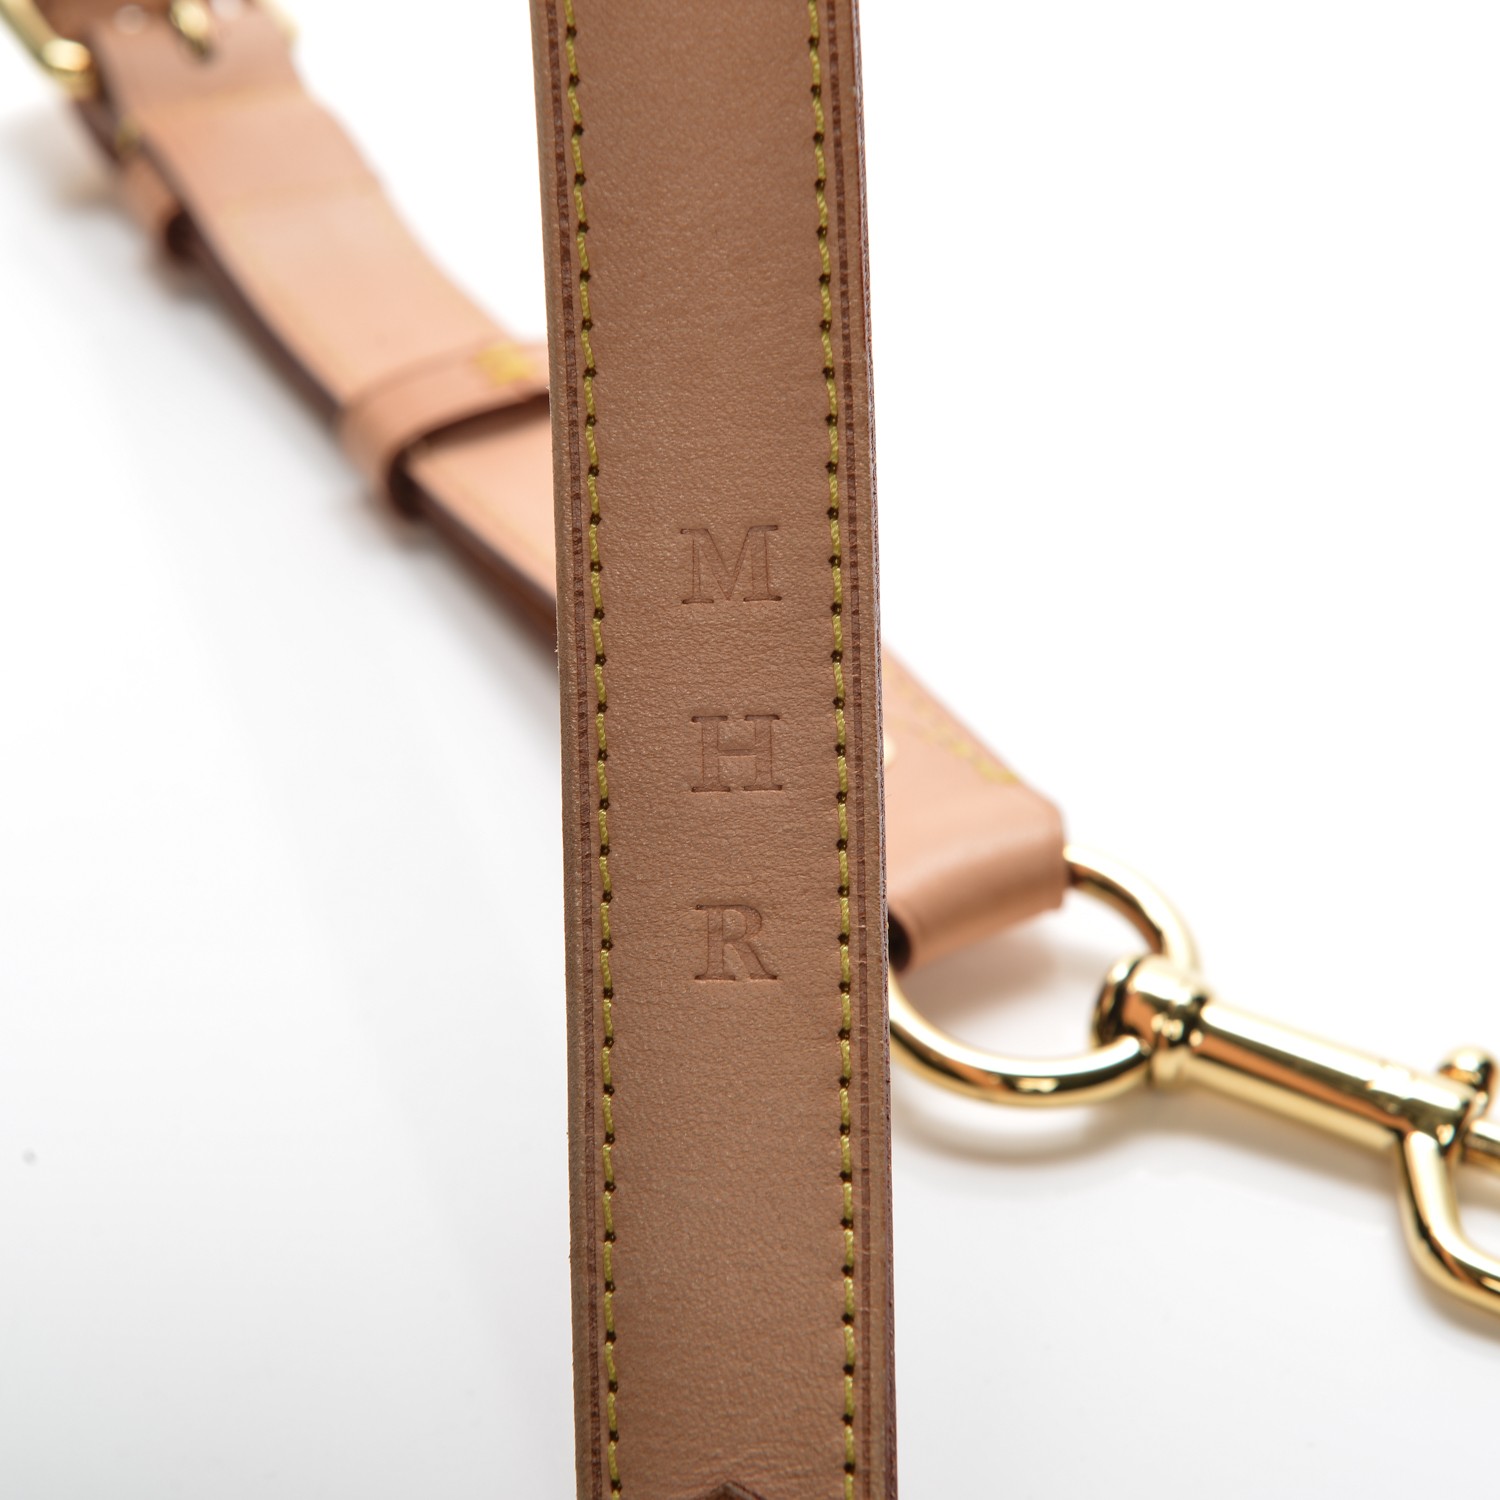 Louis Vuitton - Adjustable Shoulder Strap 25 mm VVN